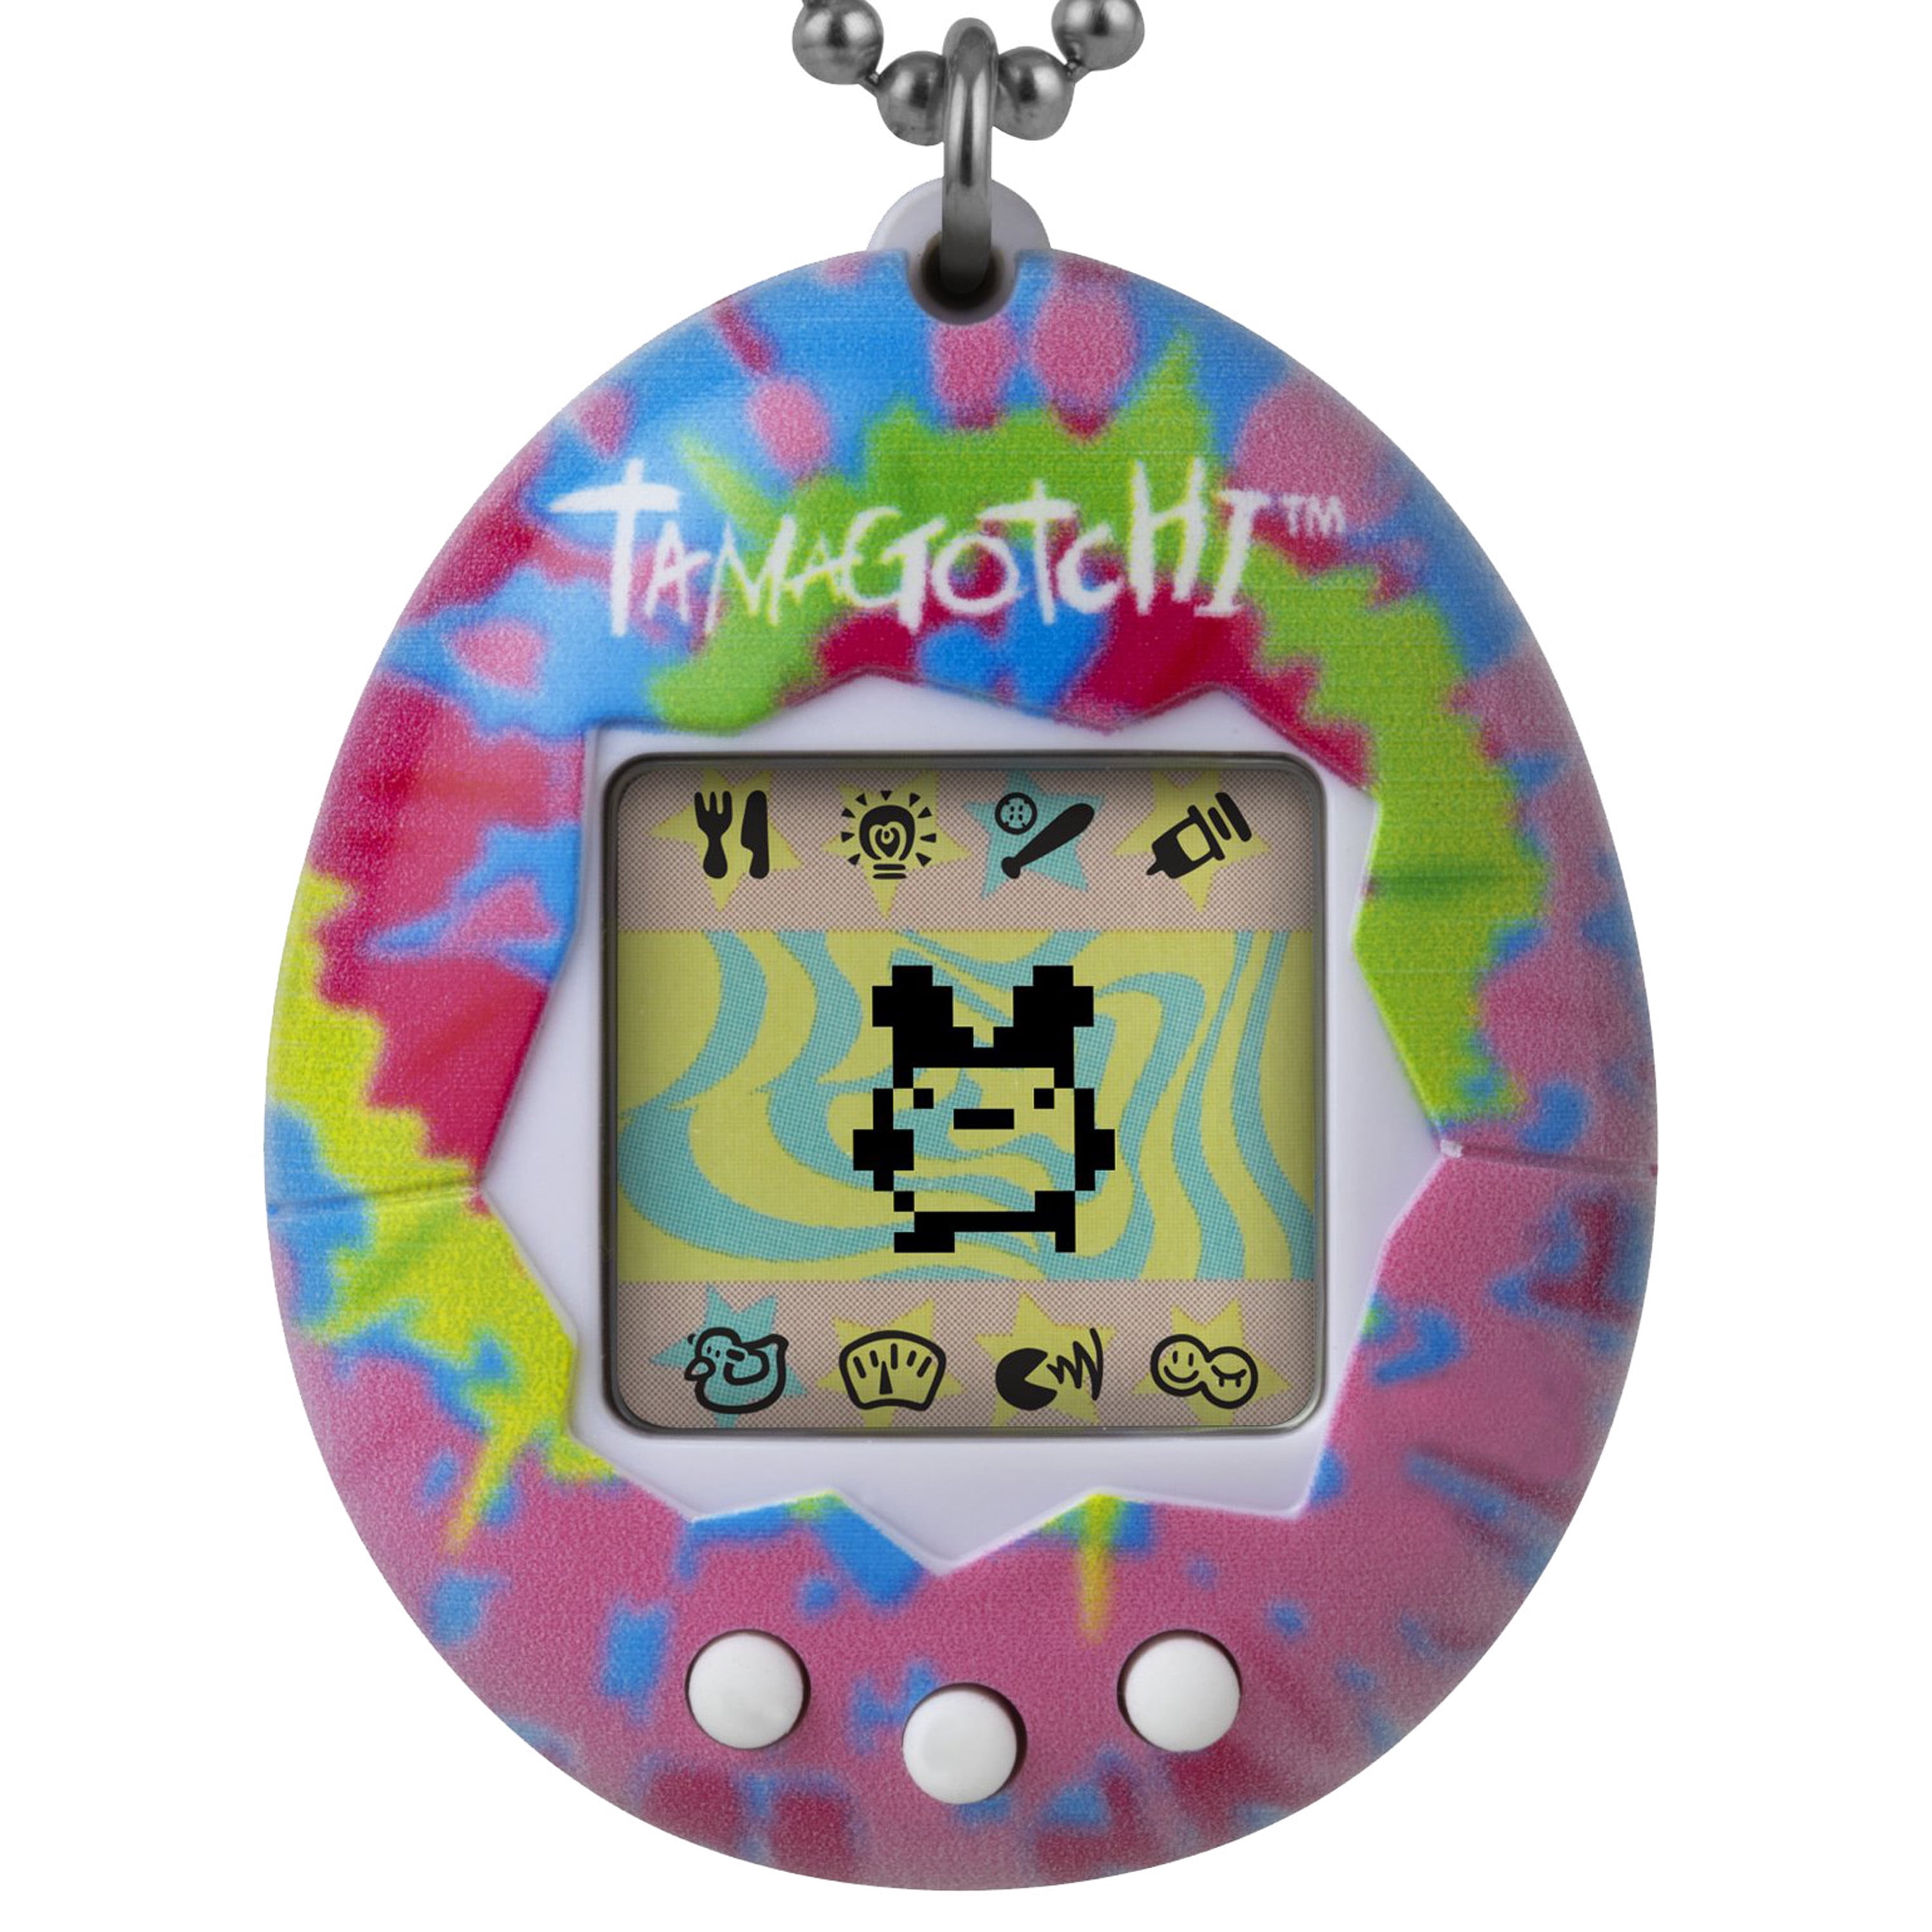 NEW Bandai Tamagotchi Original Classic Digital Pet Bright Neon Lime 